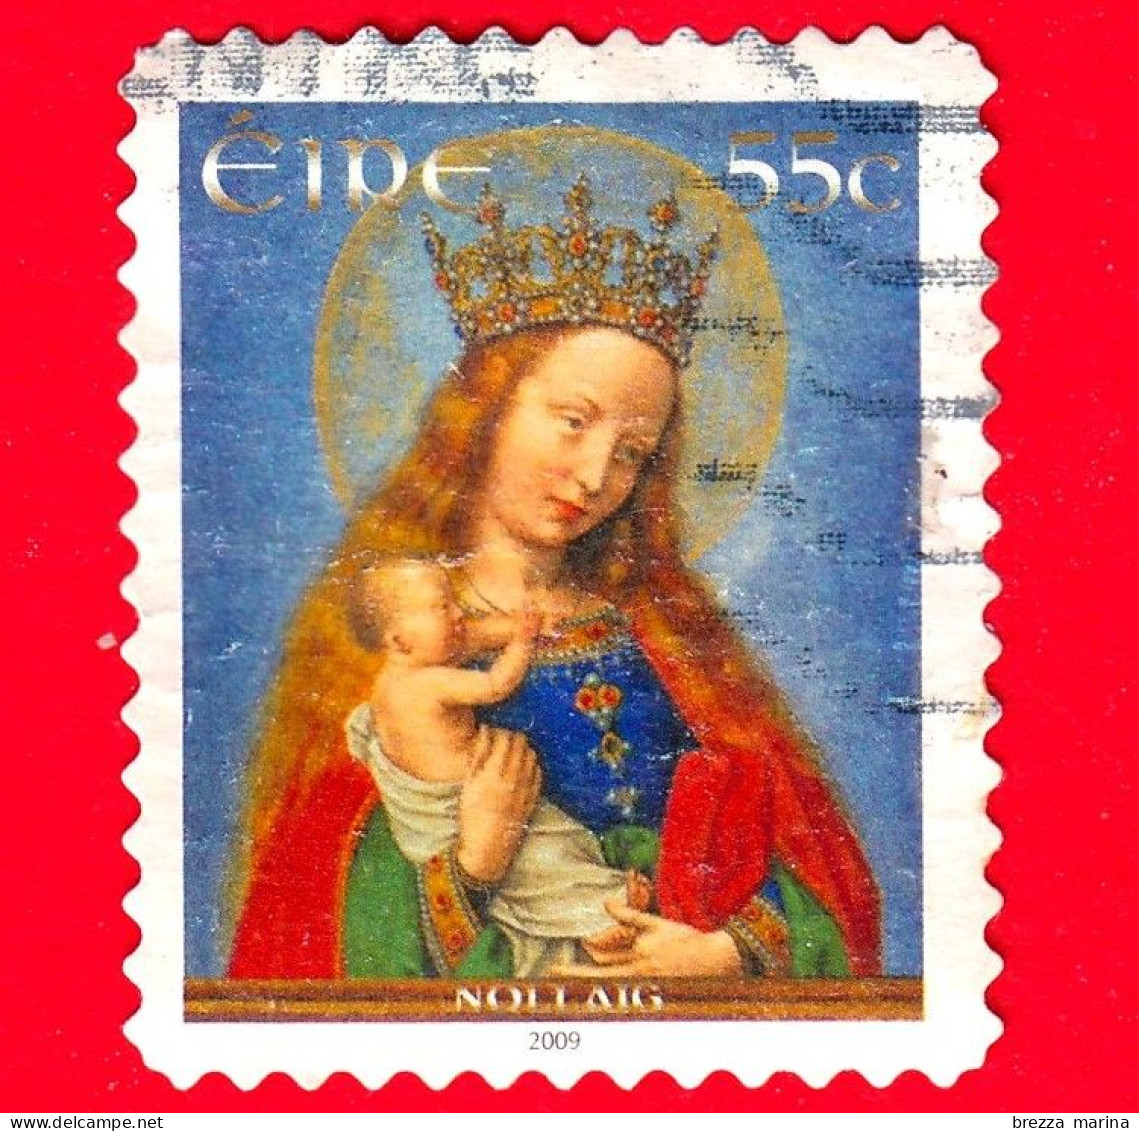 IRLANDA - Eire - Usato - 2009 - Natale - Vergine Col Bambino, Dipinto Di Simon Bening - 55 - Used Stamps